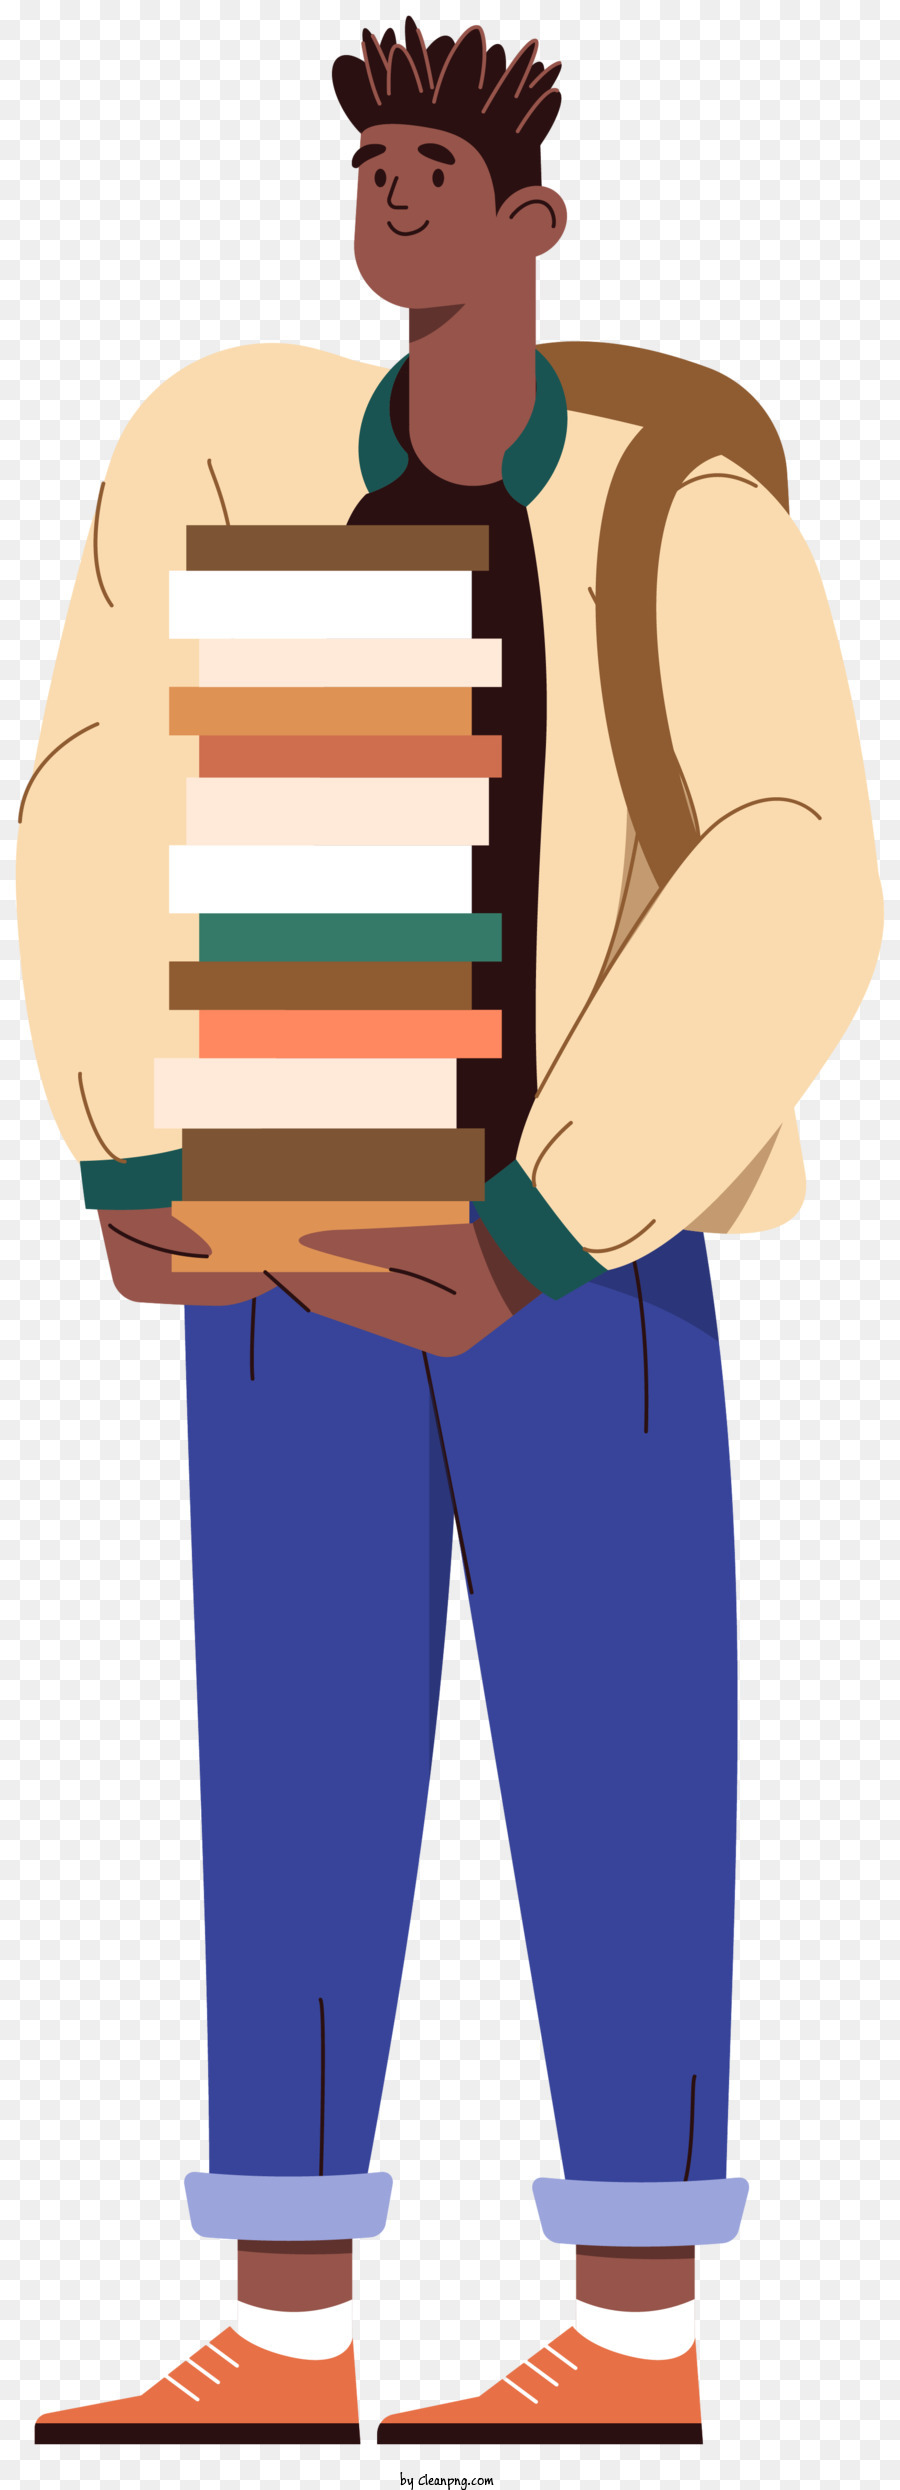 Stapel Bücher - Der Mann hält Stapel Bücher mit schelmischem Aussehen